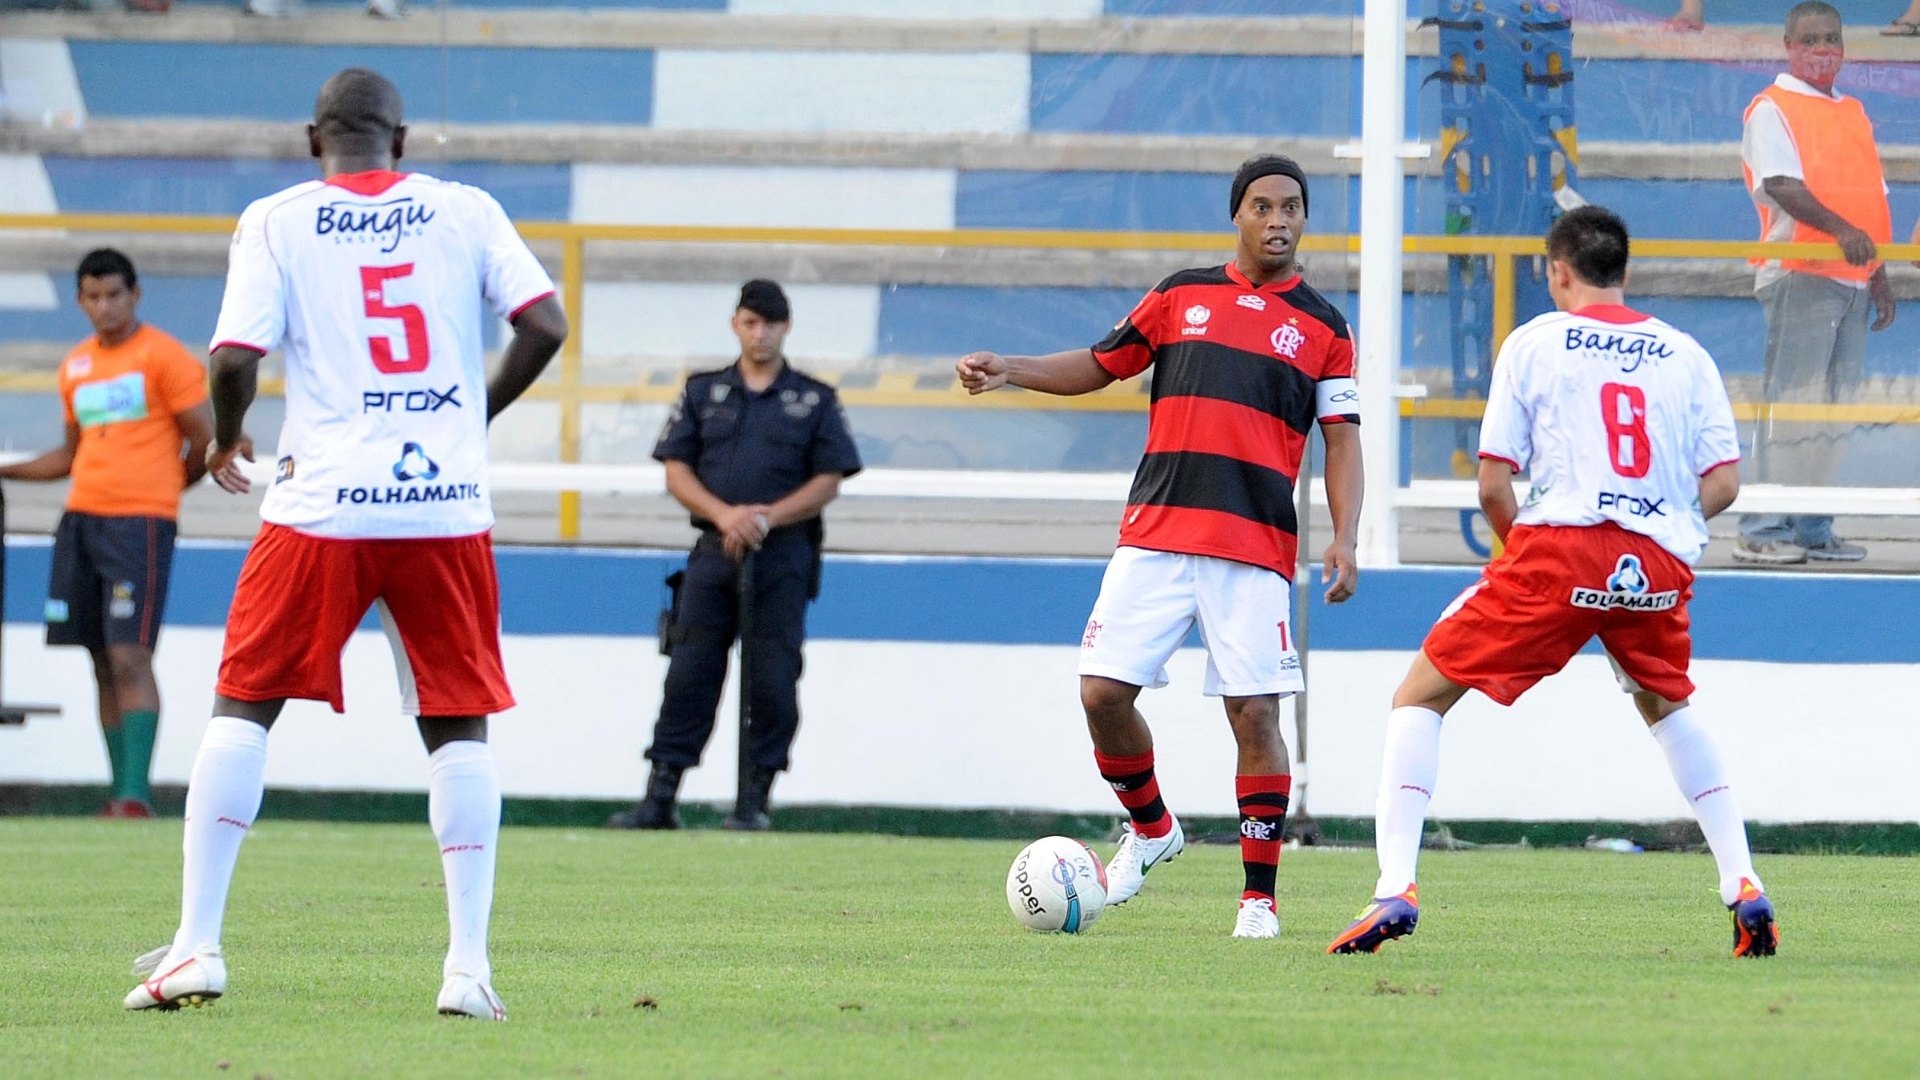 Ronaldinho Gaúcho tenta jogada durante partida do Flamengo contra o Bangu, em Macaé